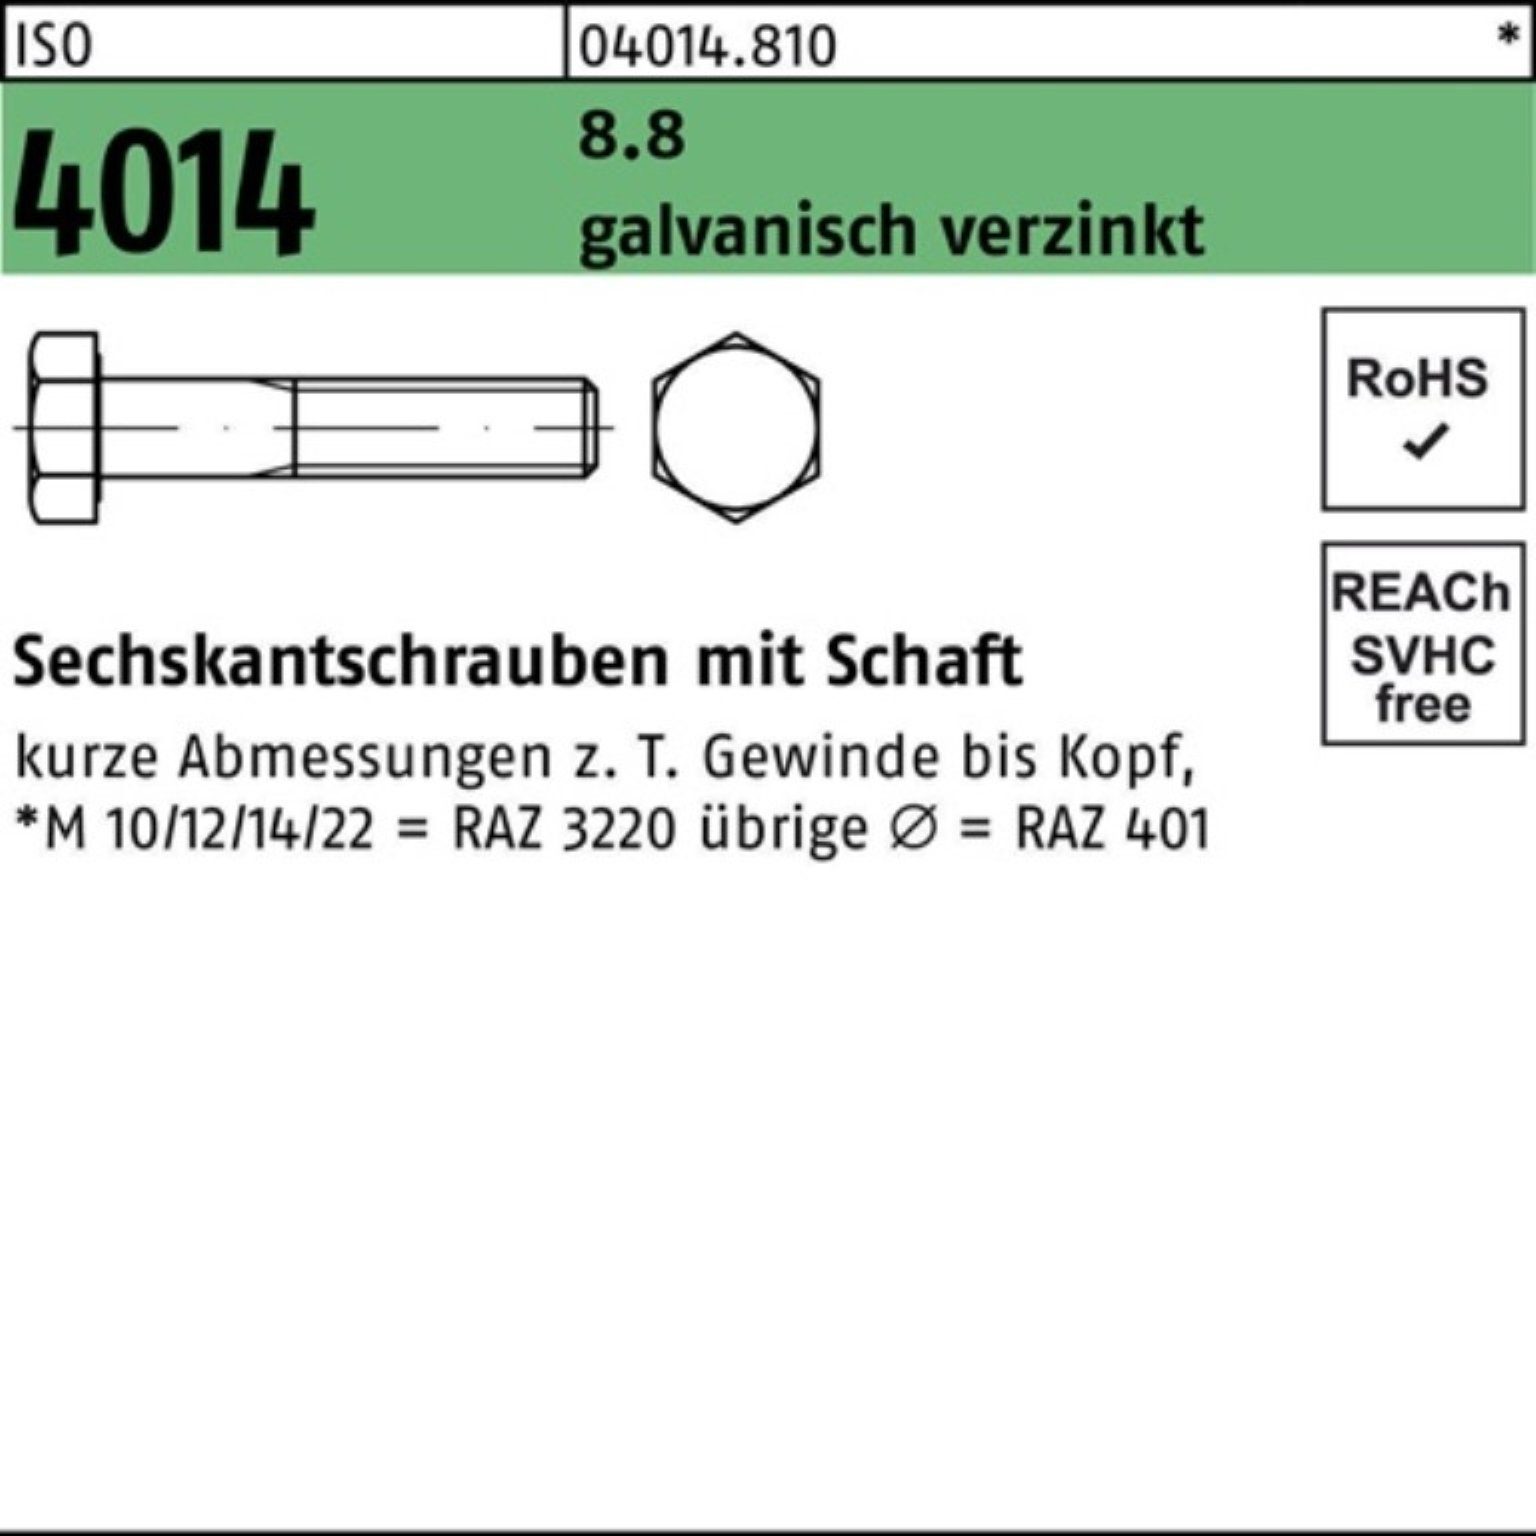 Bufab Sechskantschraube ISO galv.verz. Pack 4014 8.8 310 Sechskantschraube M24x 100er 1 Schaft